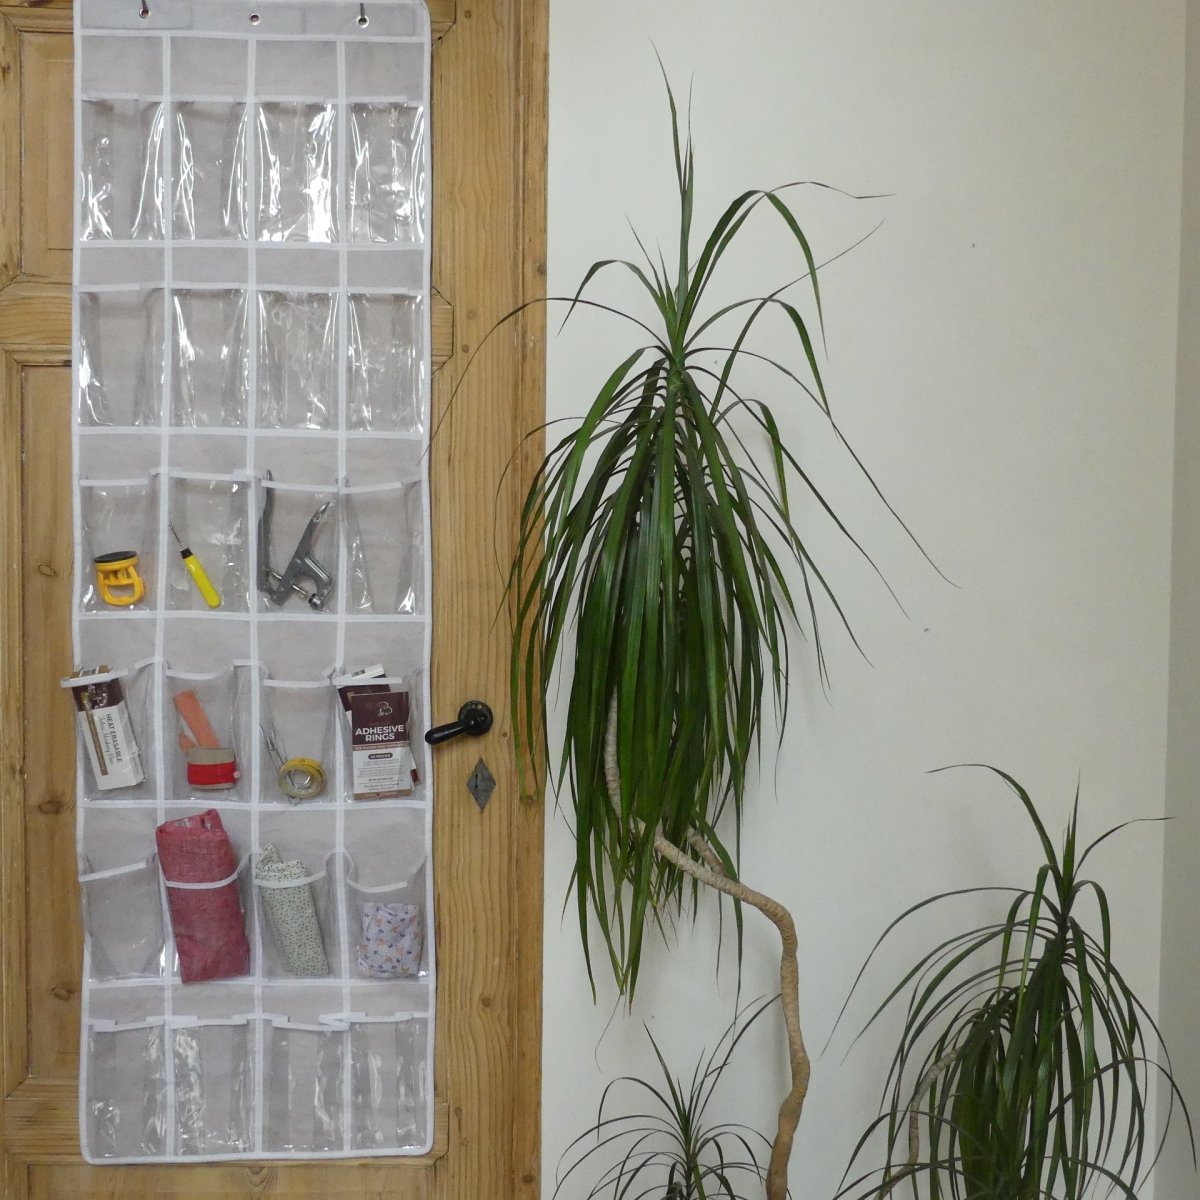 Craft Room Storage with an Over The Door Organizer hanging on the door